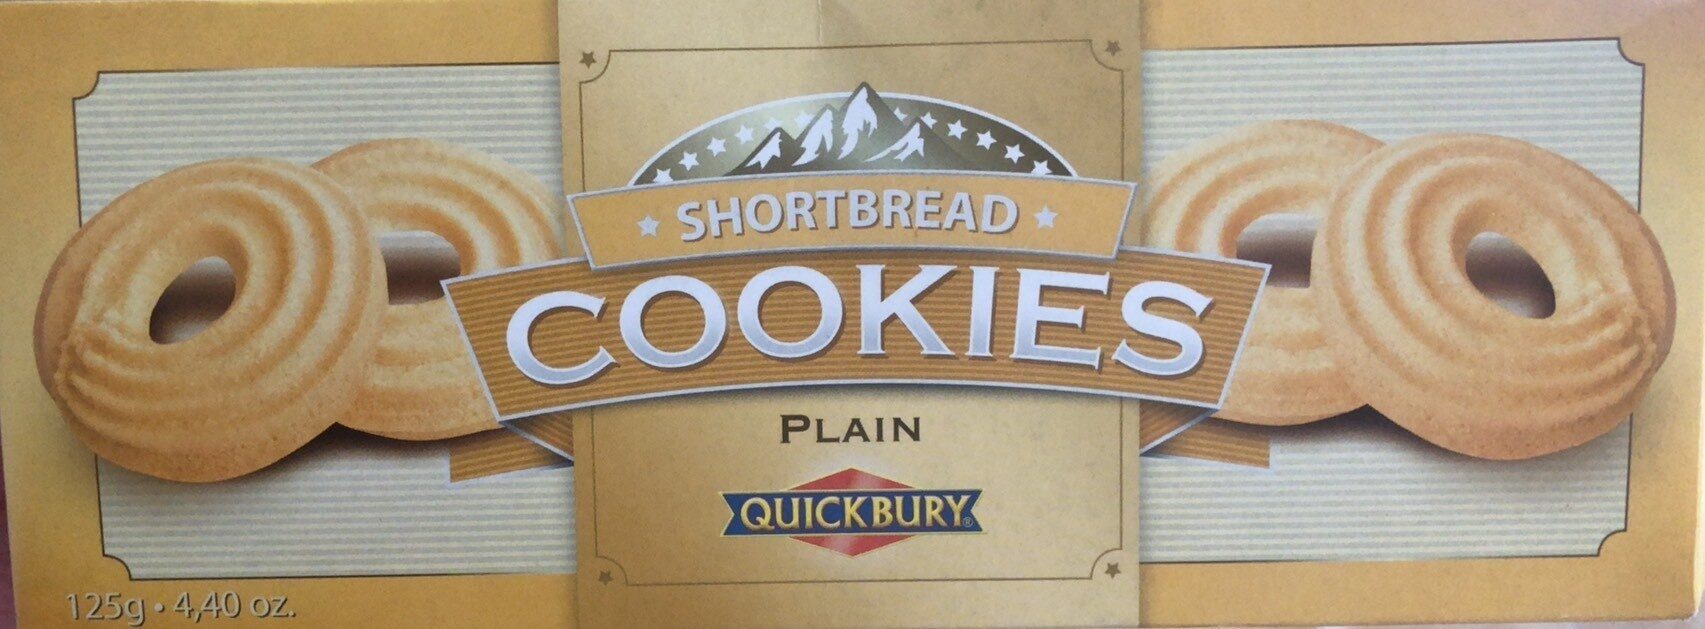 Shortbread cookies plain - 产品 - en